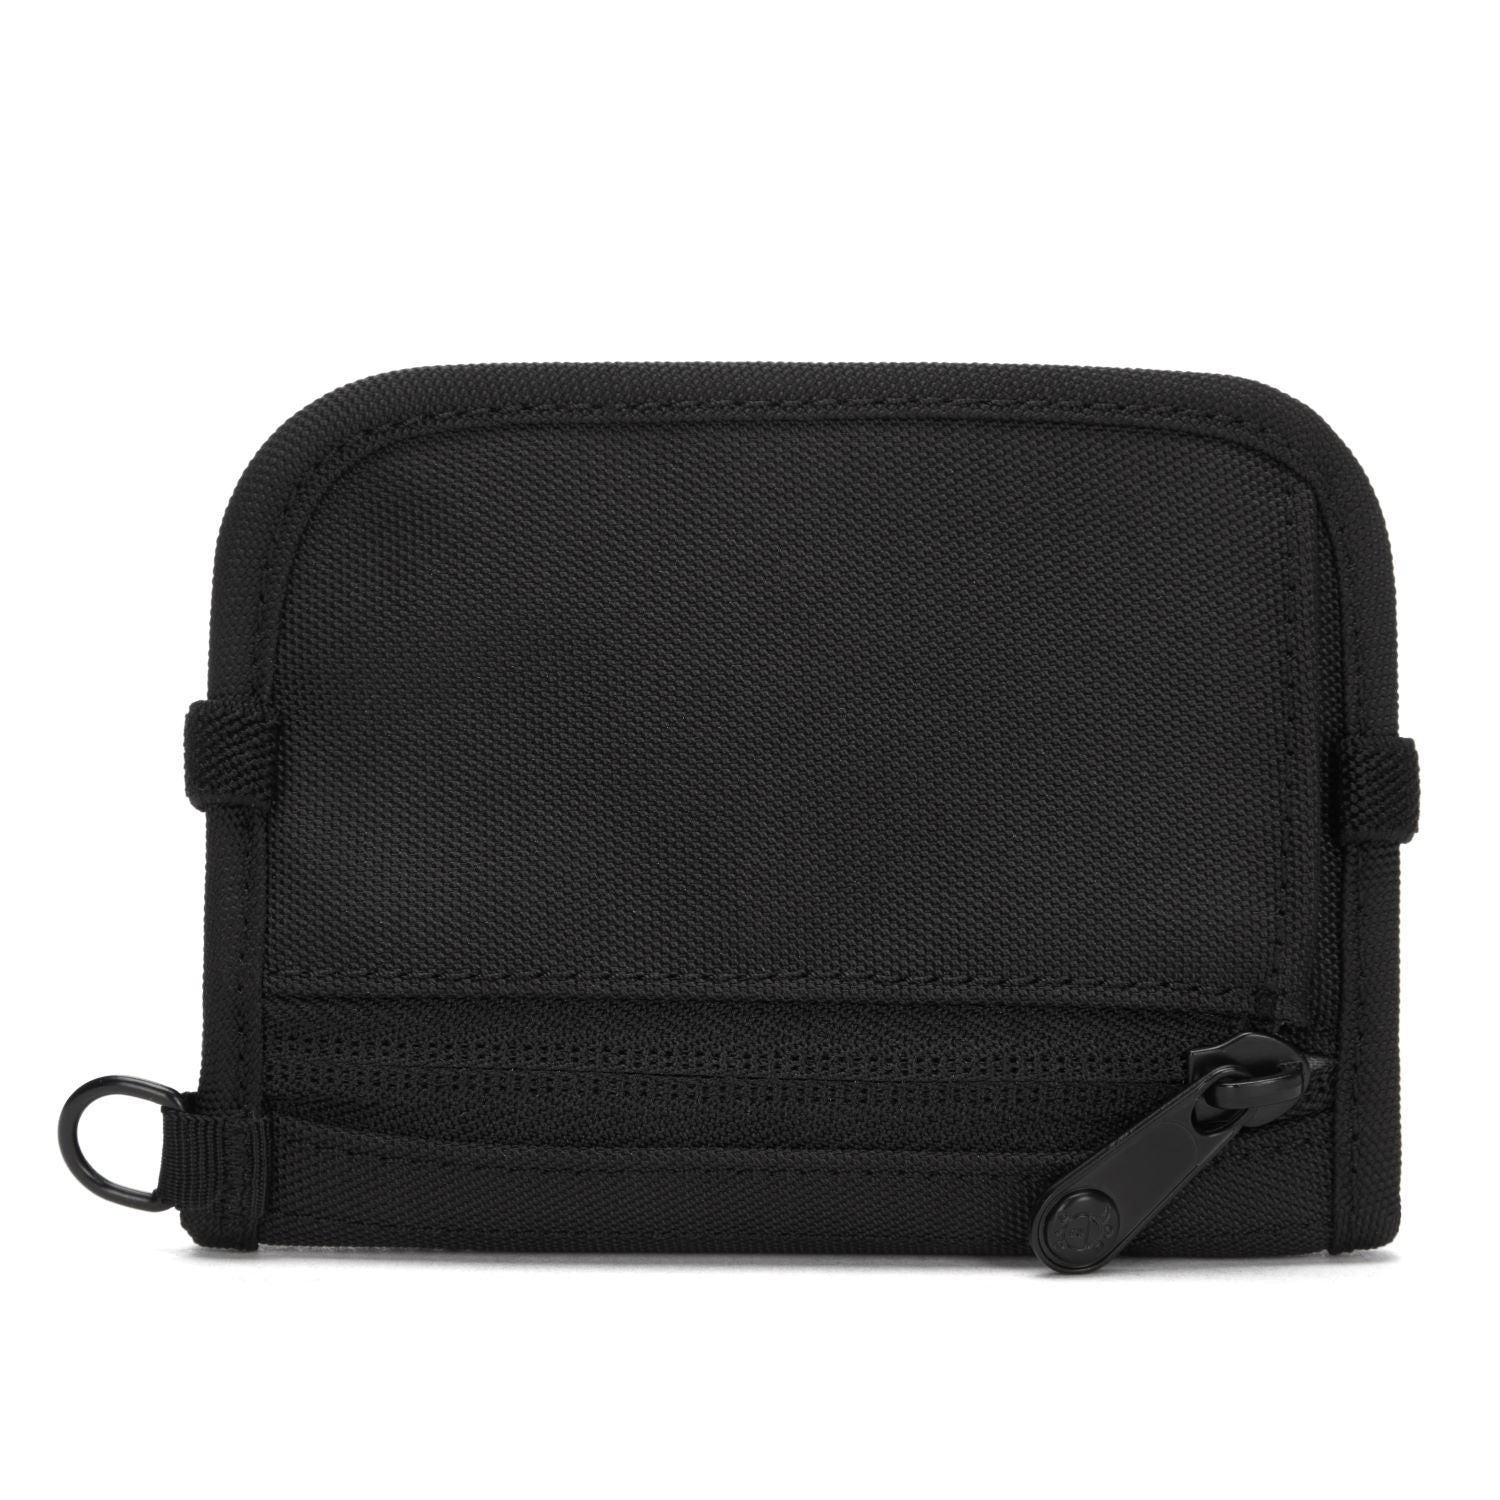 Cut resistant wallet strap  Pacsafe® - Pacsafe – Official APAC Store